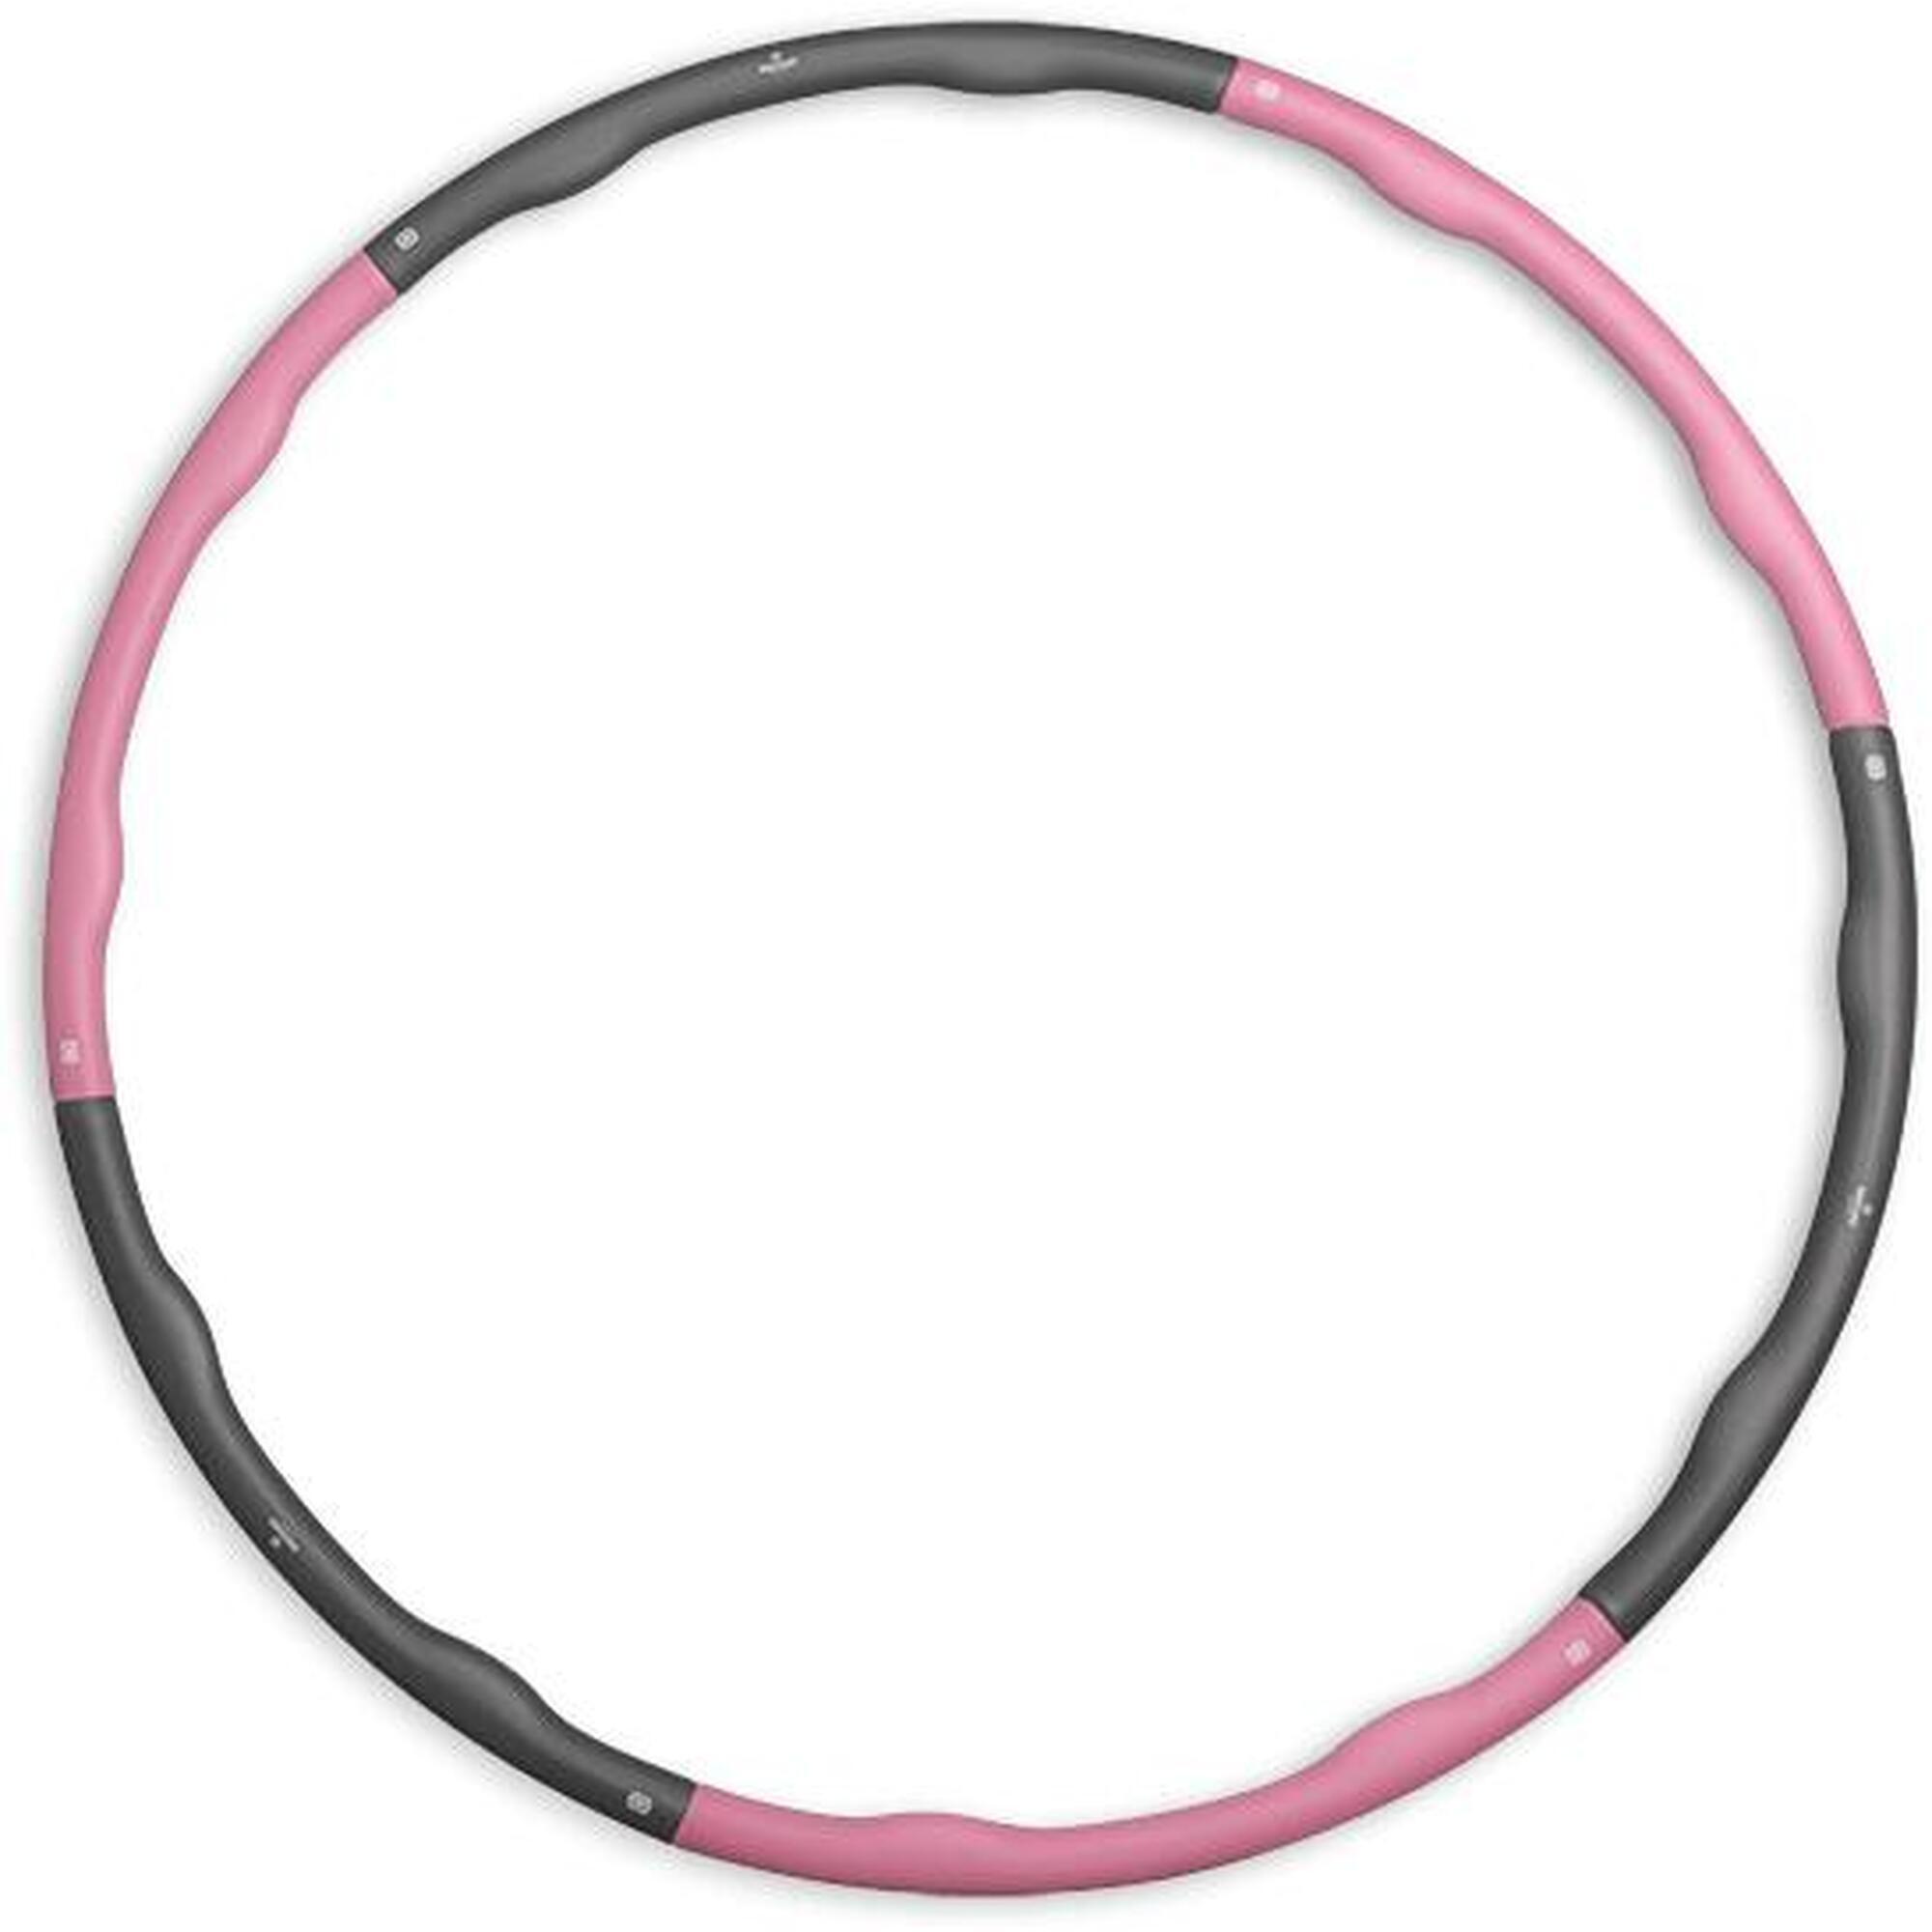 Hula hoop de fitness - Rosa/Cinzento - 1,5kg